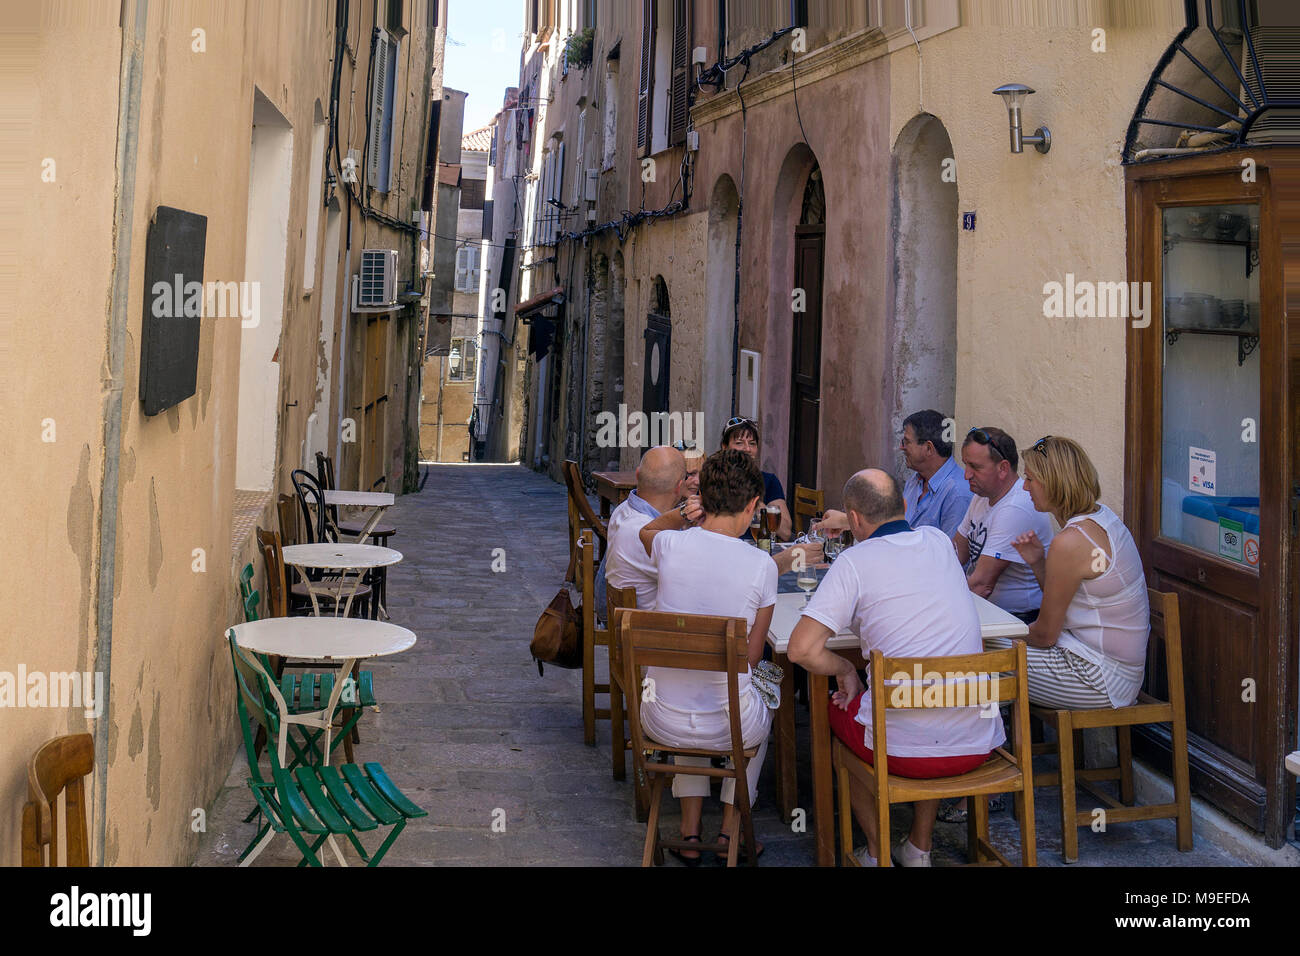 Bar et restaurant dans une ruelle étroite, la vieille ville de Bonifacio, Corse, France, Europe, Méditerranée Banque D'Images